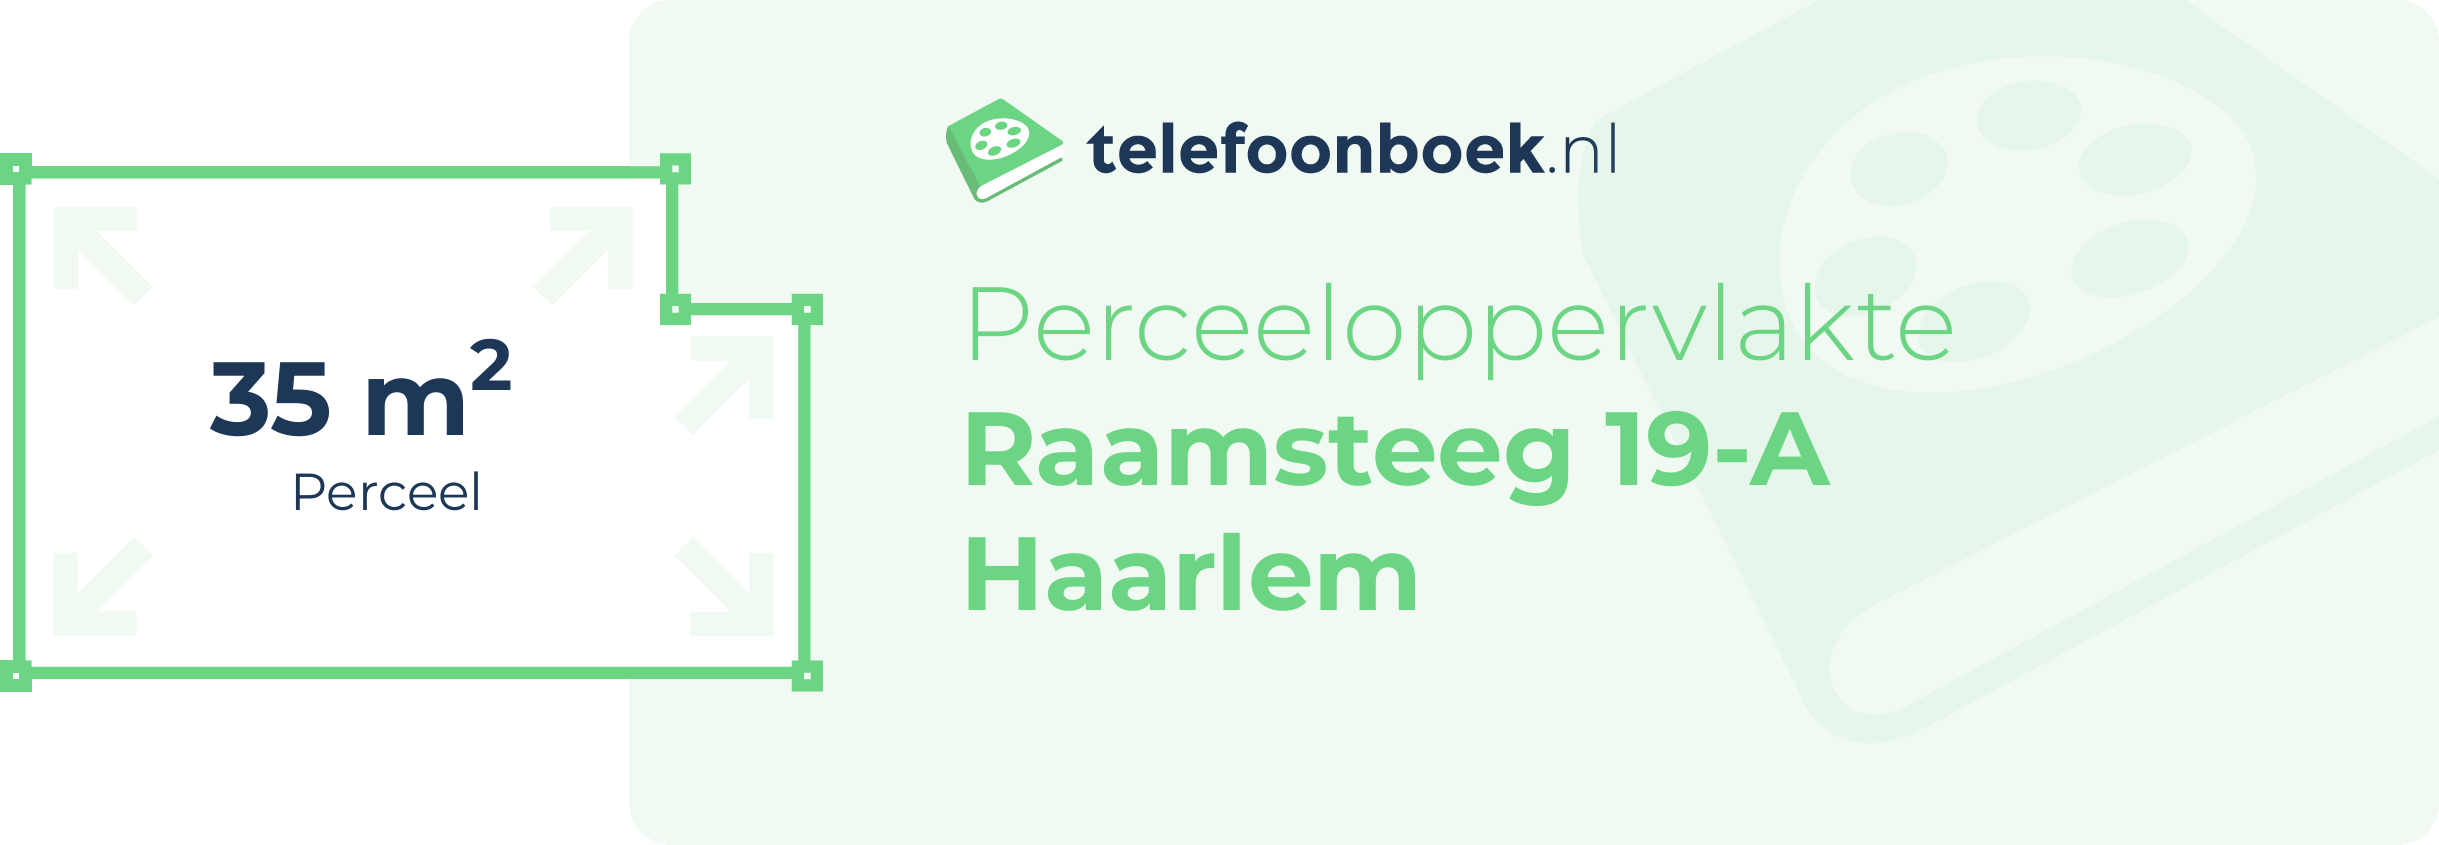 Perceeloppervlakte Raamsteeg 19-A Haarlem